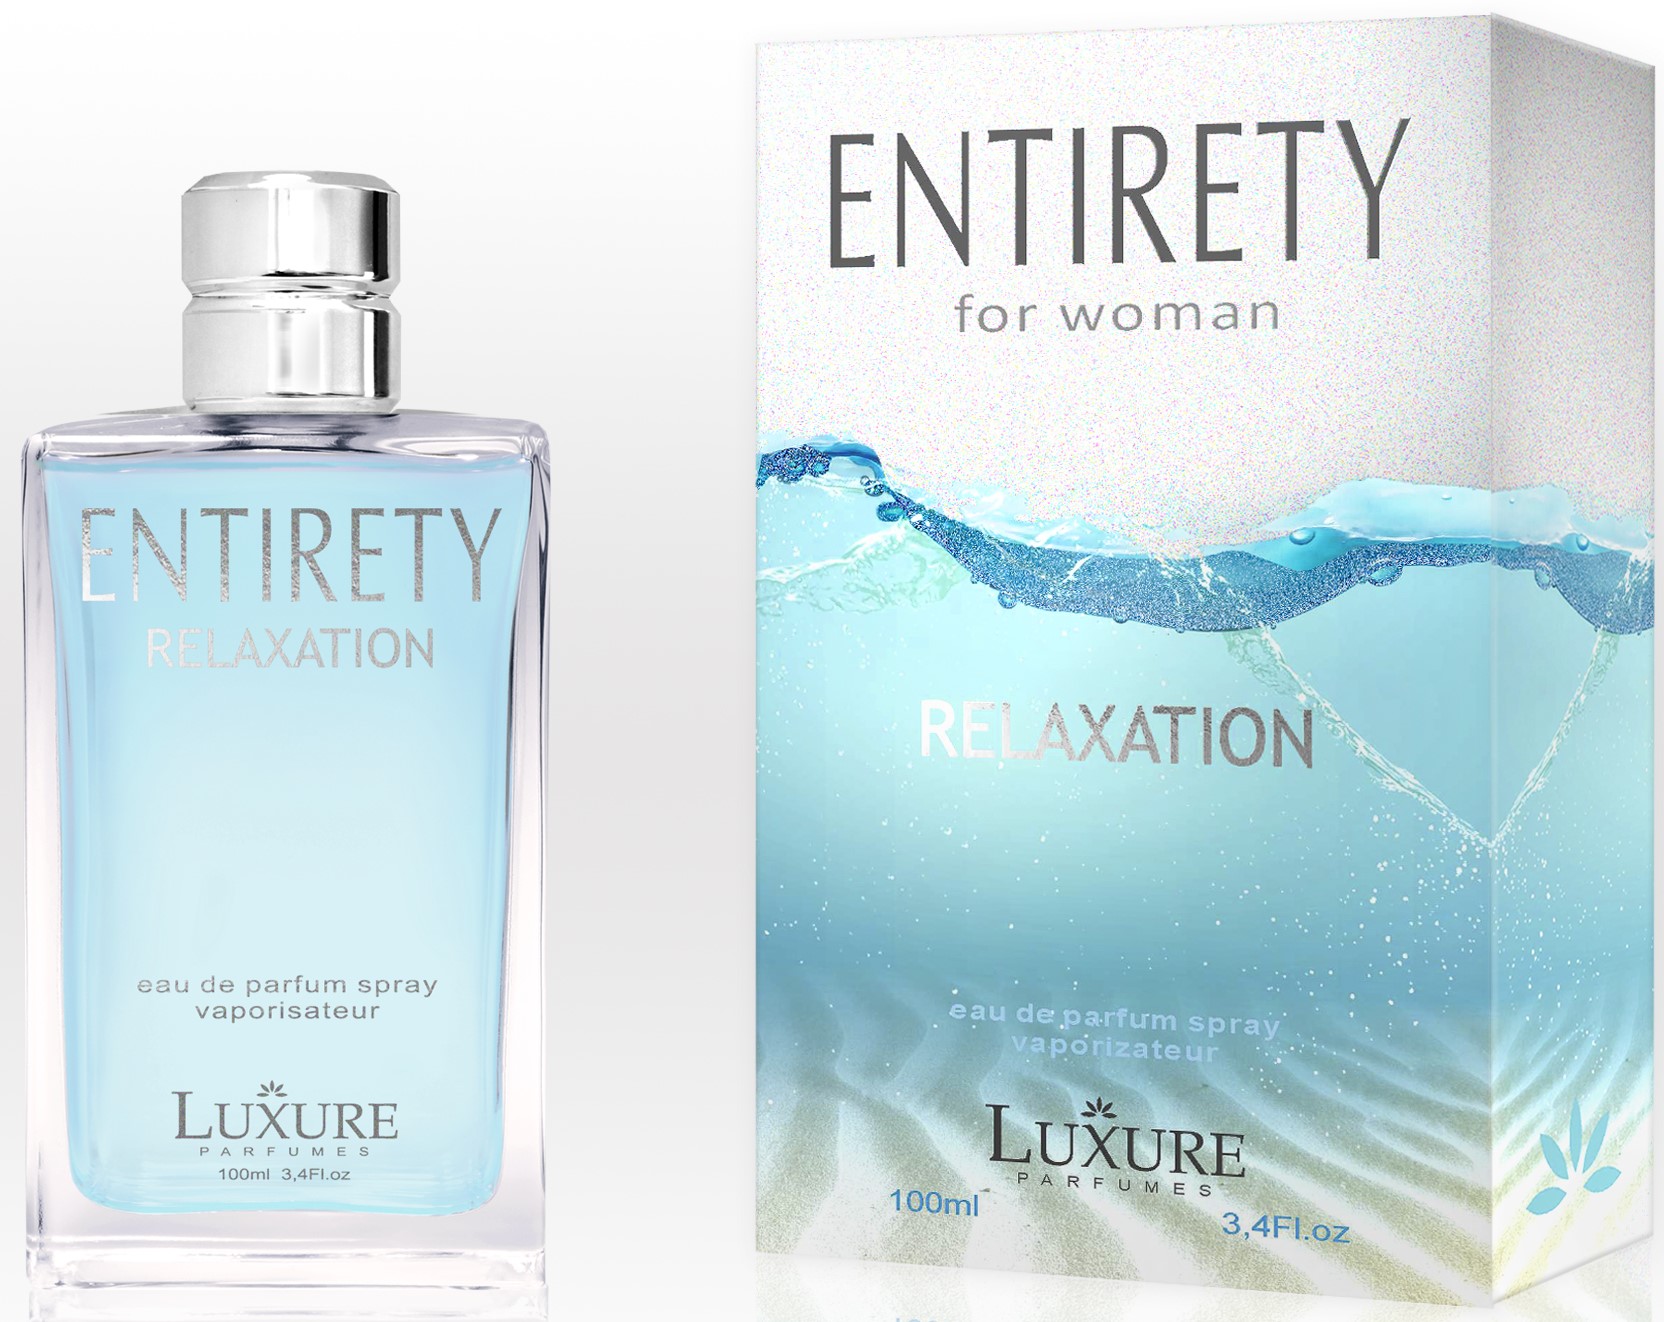 Luxure ENTIRETY RELAXATION parfemovaná voda pro ženy 100ml